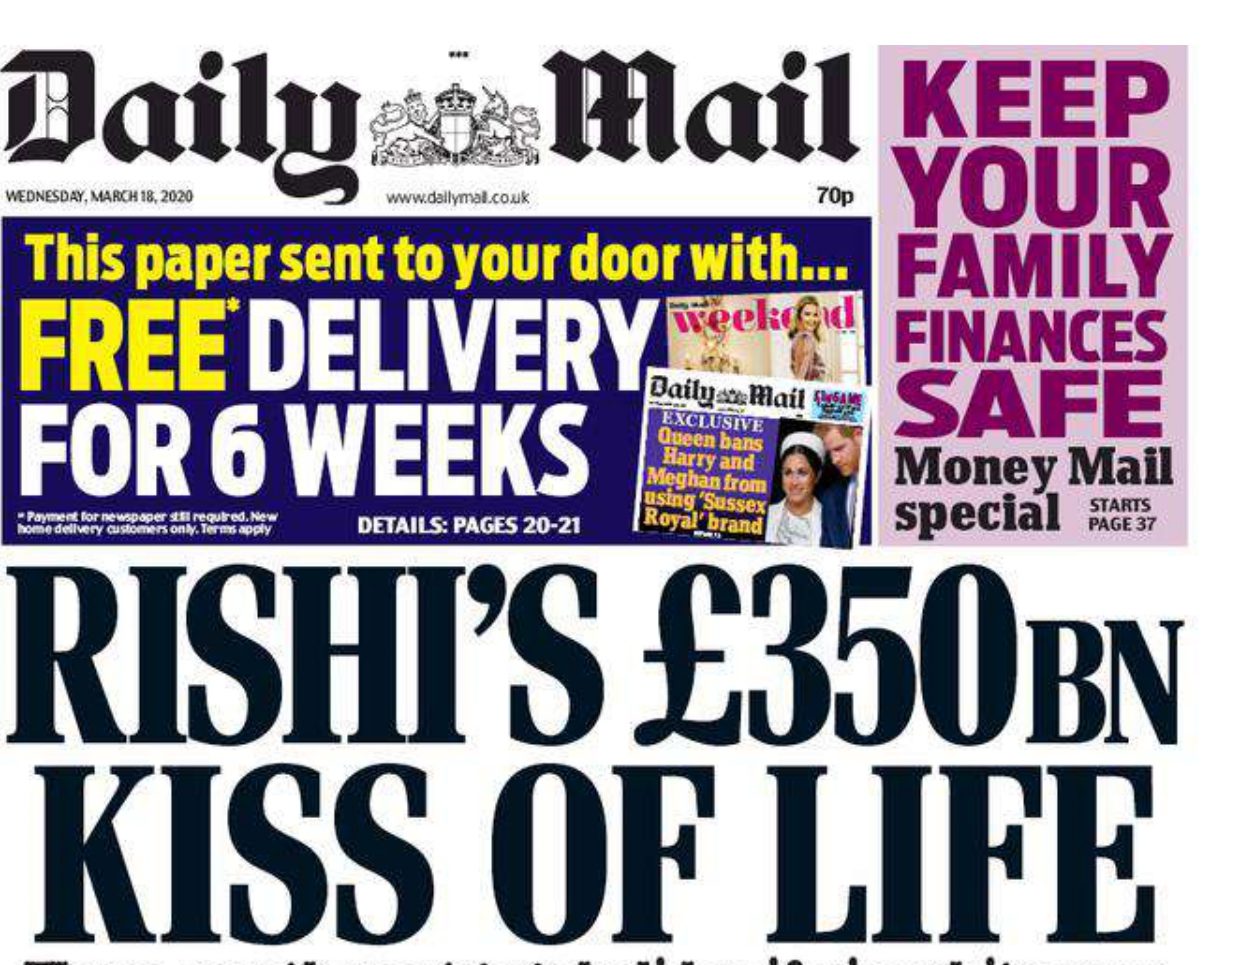 Daily Mail - "Il bacio della vita da 350 miliardi di sterline di Rishi"